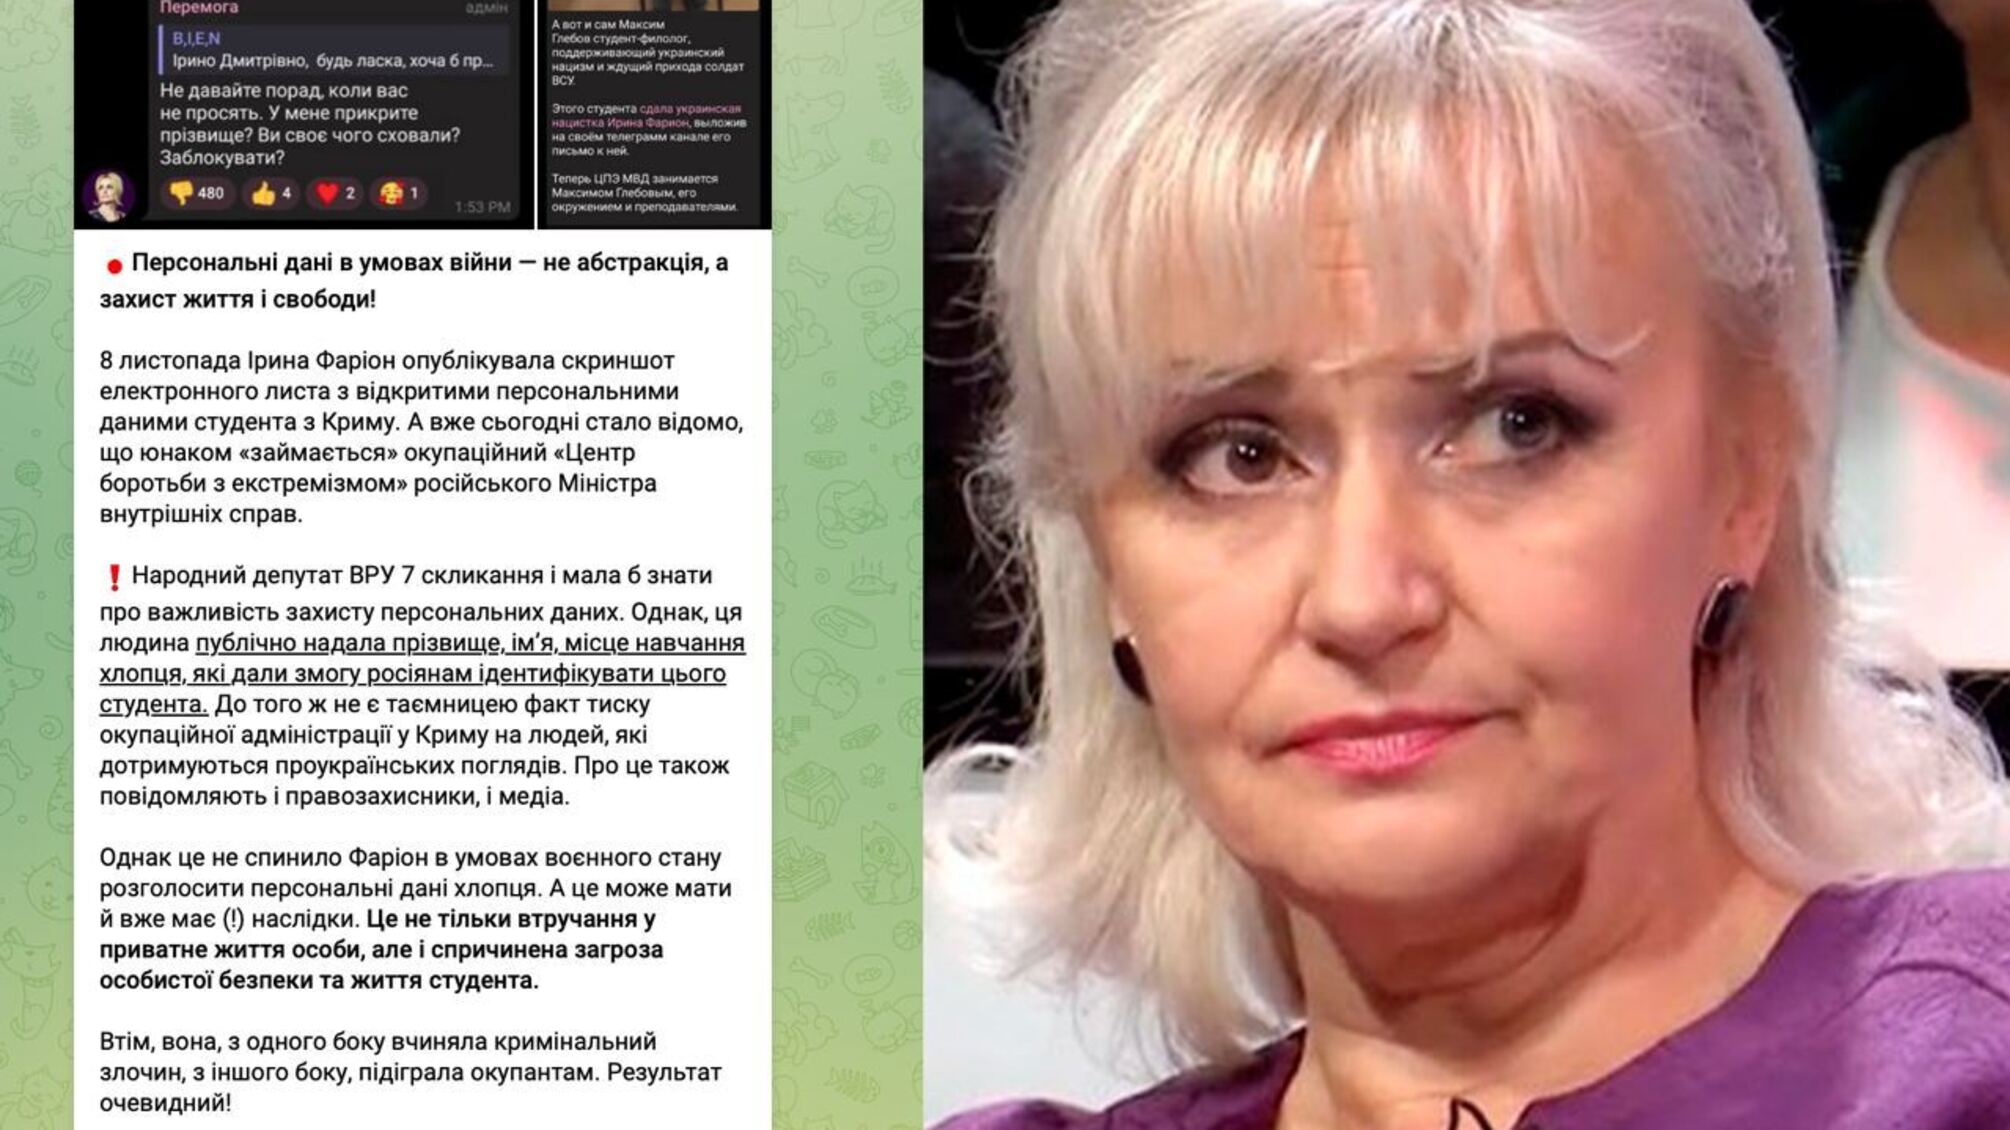 Фарион обнародовала электронное письмо, которое поступило ей от крымского студента